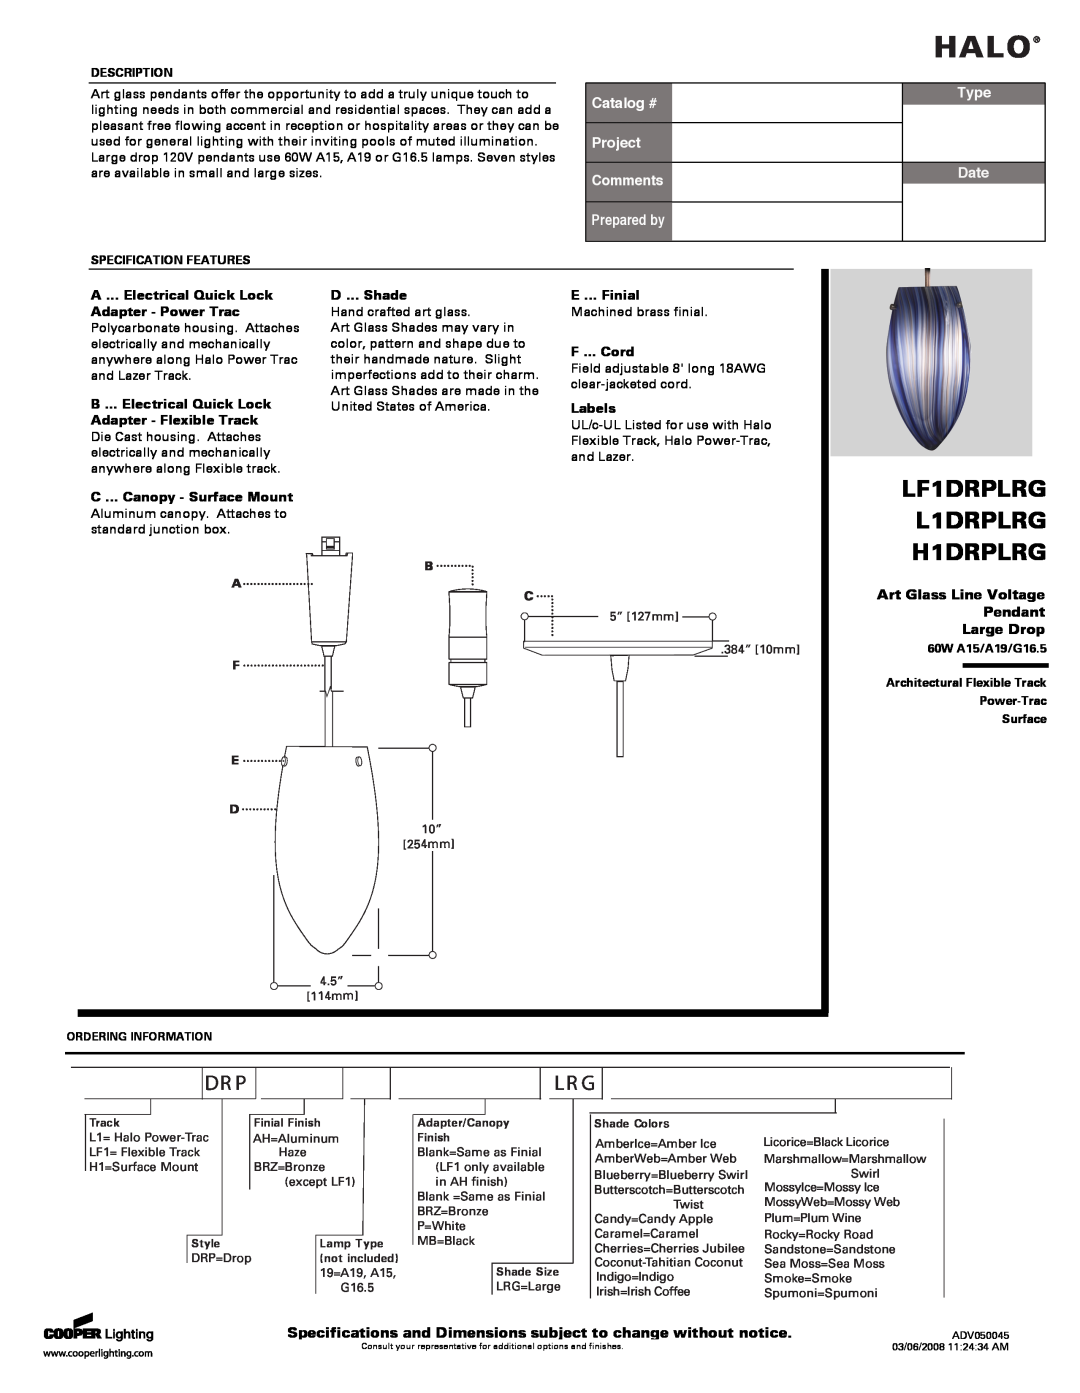 Cooper Lighting specifications Art Glass Line Voltage Pendant Large Drop, Halo, LF1DRPLRG L1DRPLRG, H1DRPLRG, Dr P 